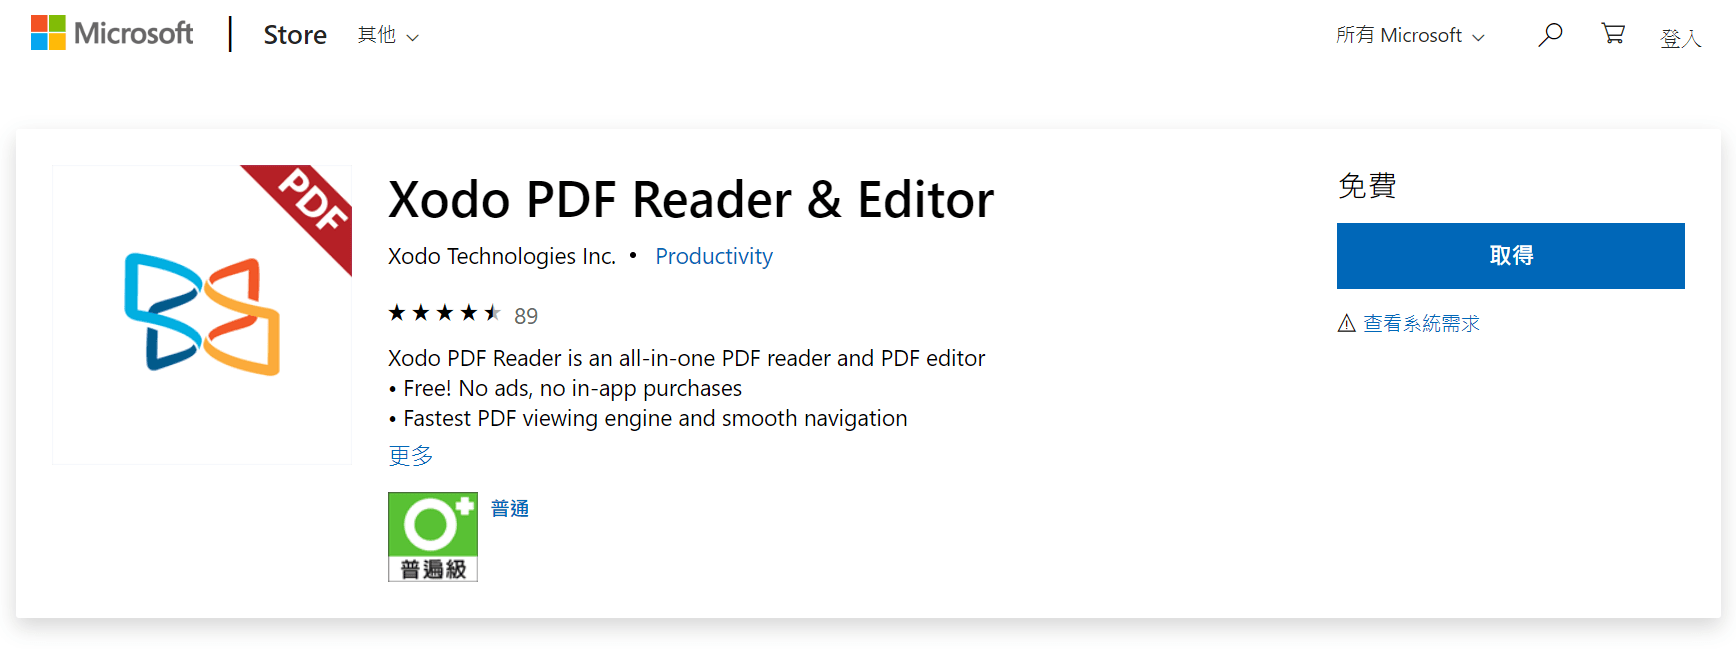 Image 001 2 - [免費] 編輯 PDF 與手寫筆記好用的軟體 Xodo，檔案小、功能全！